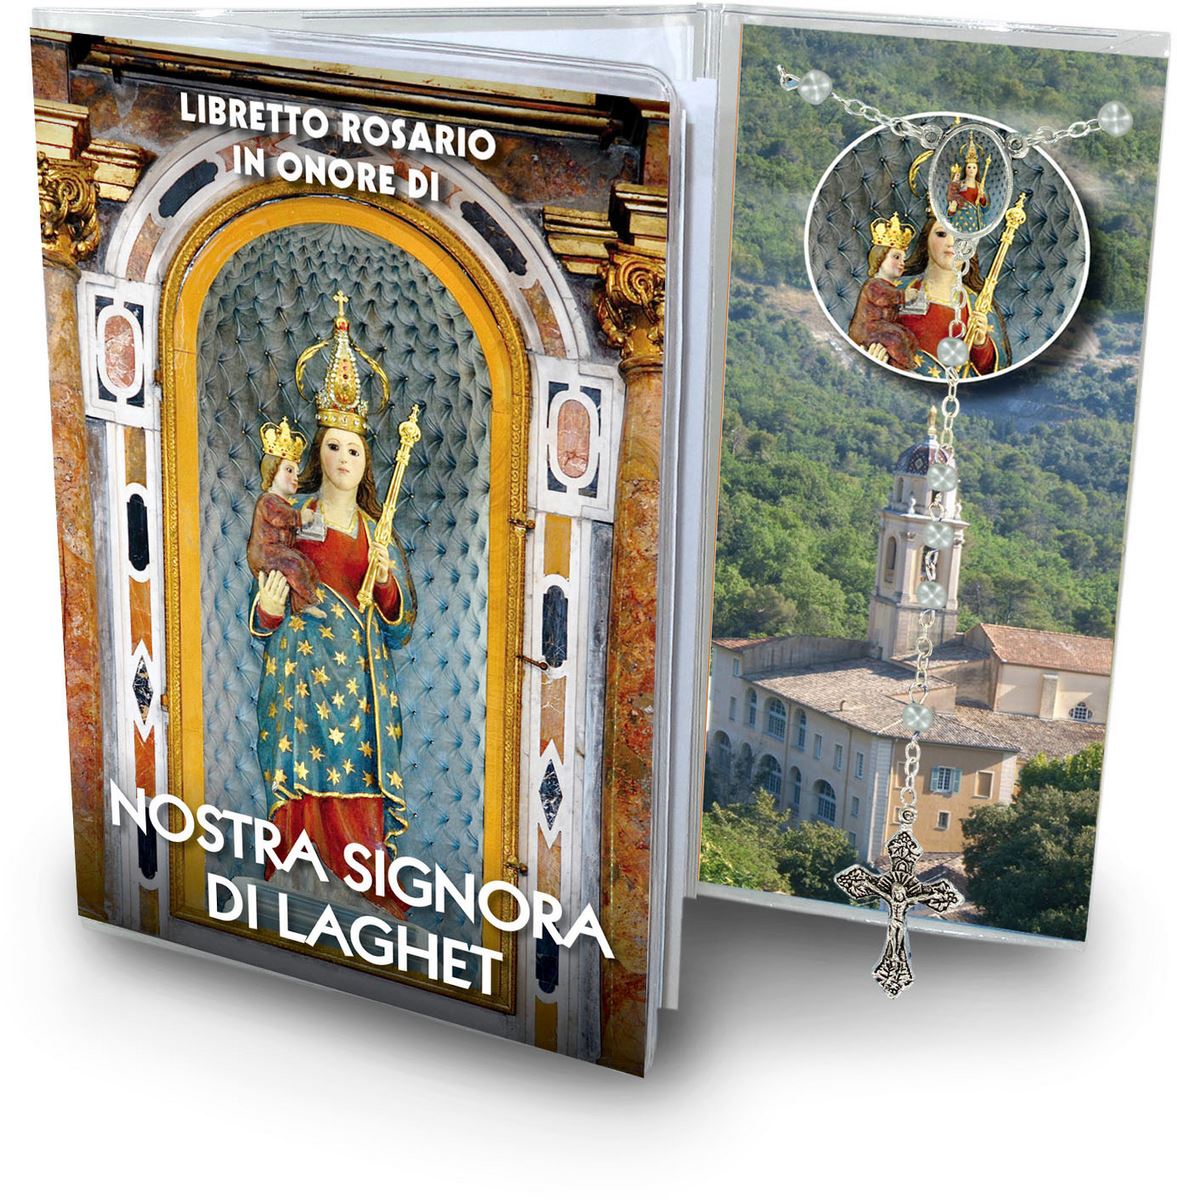 libretto con rosario notre dame de laghet - italiano